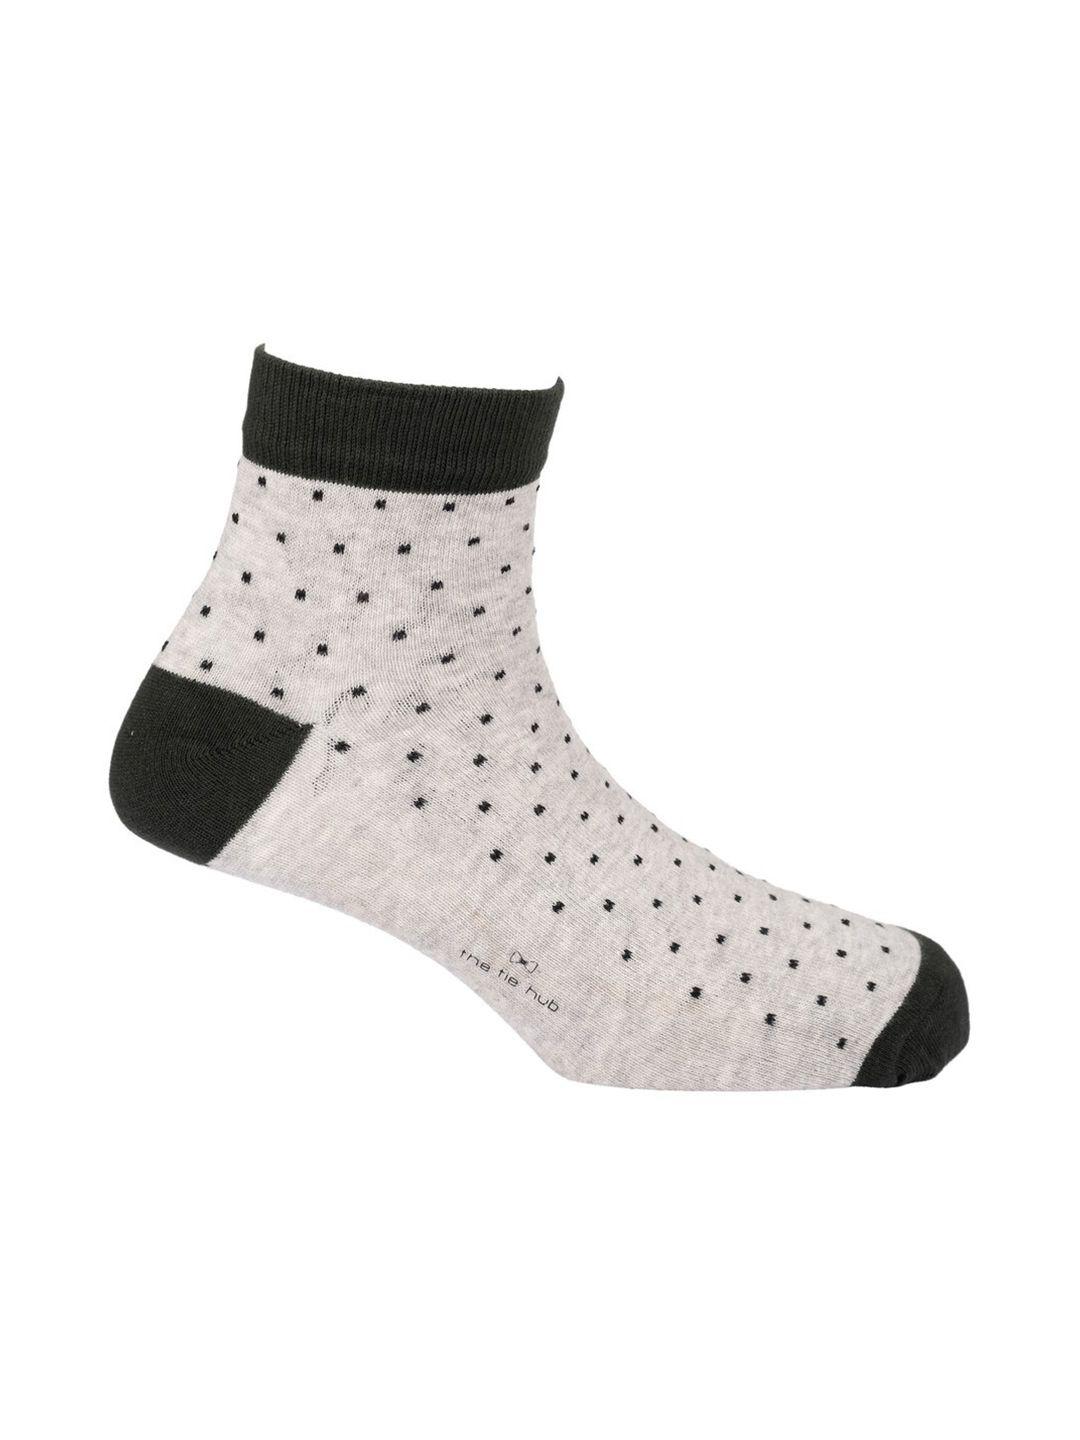 the-tie-hub-men-grey-polka-dot-ankle-length-socks